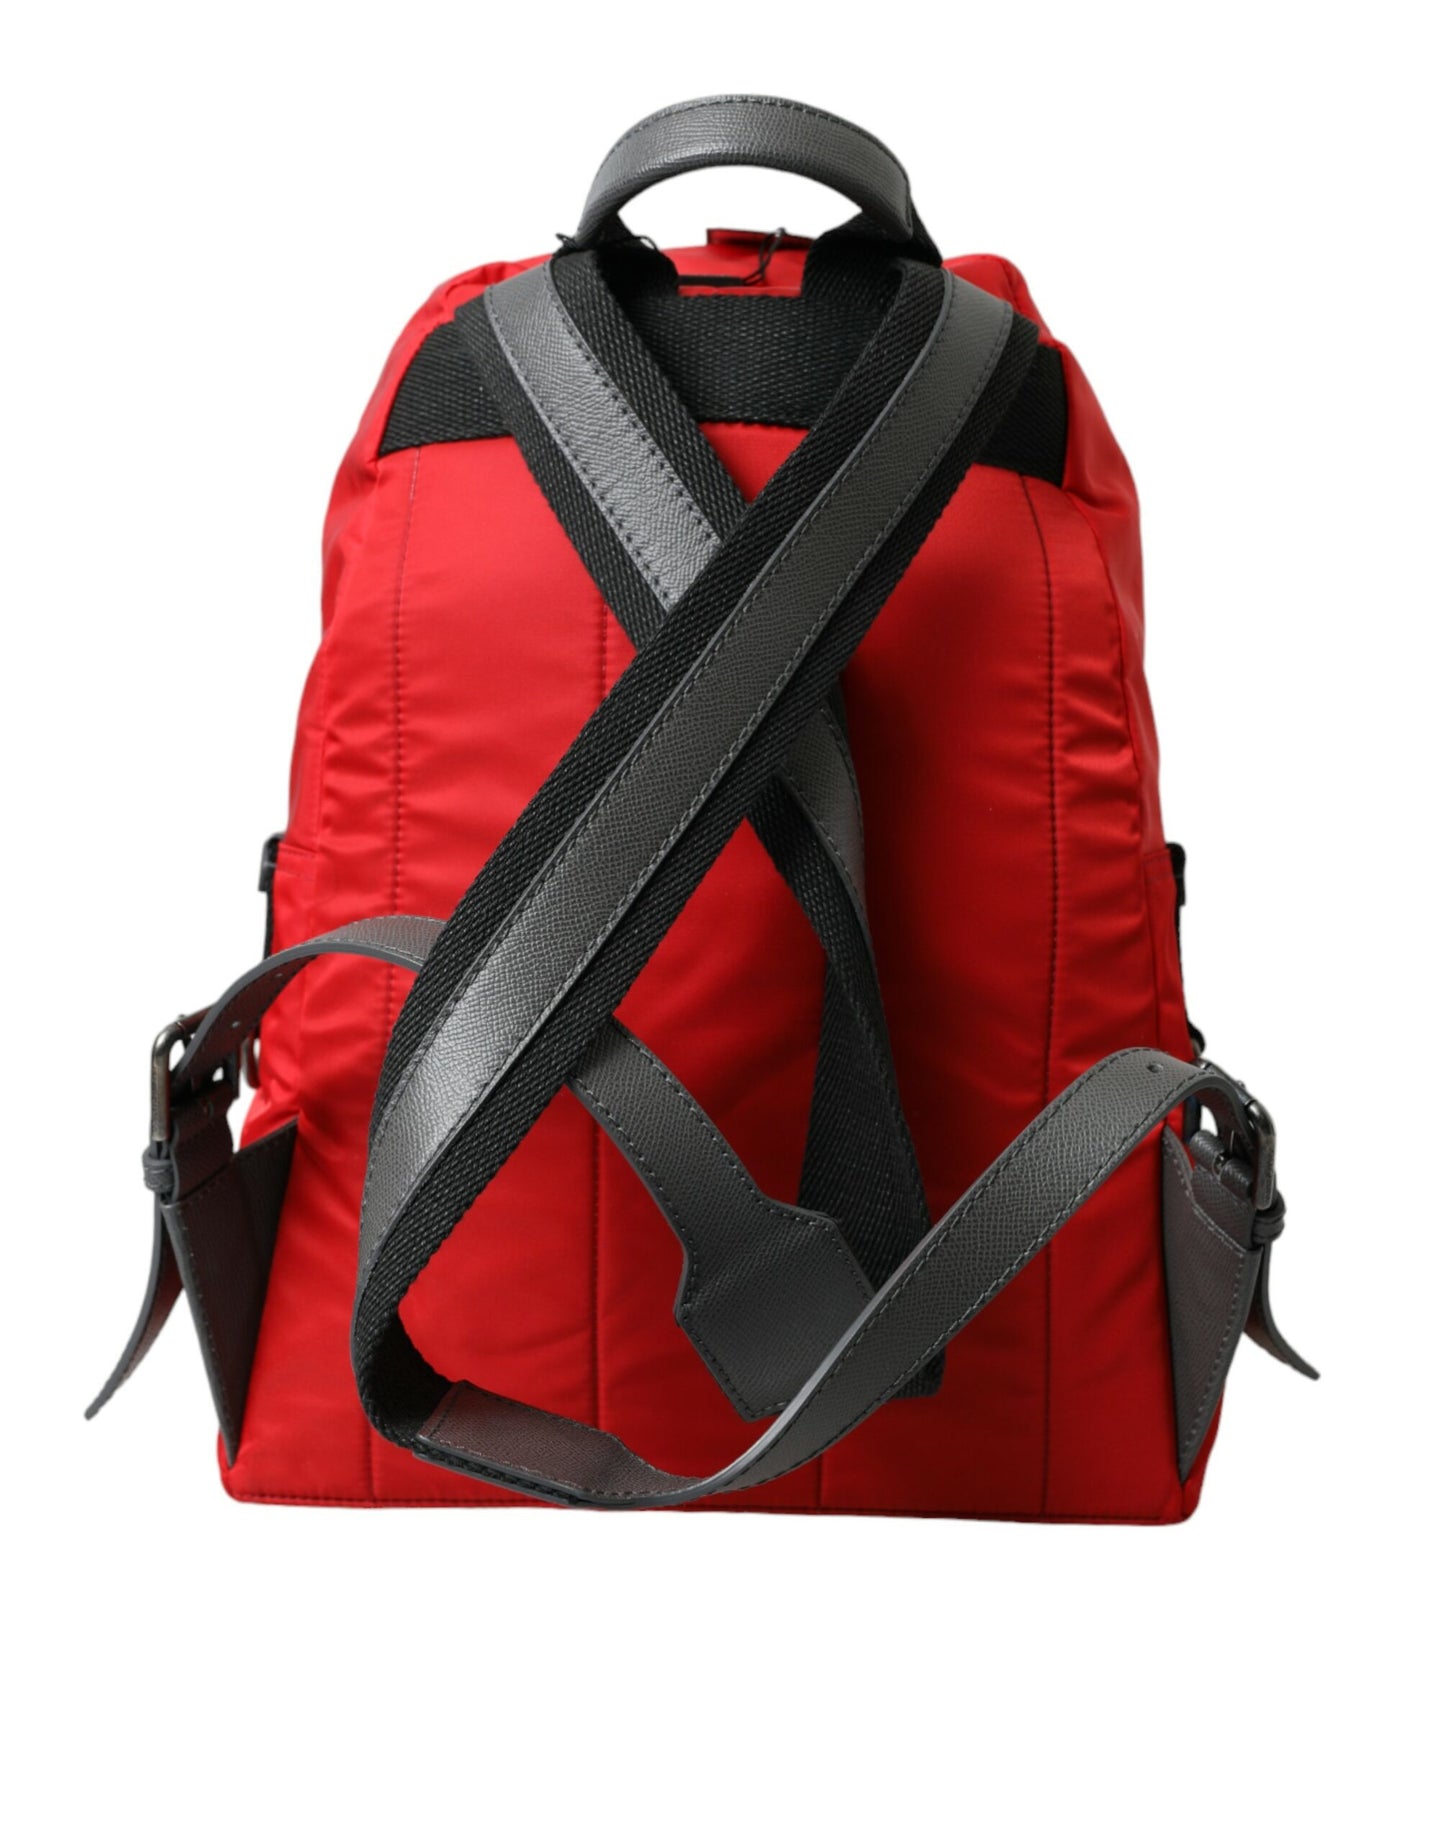 Red Nylon Leather DG Logo School Backpack Bag